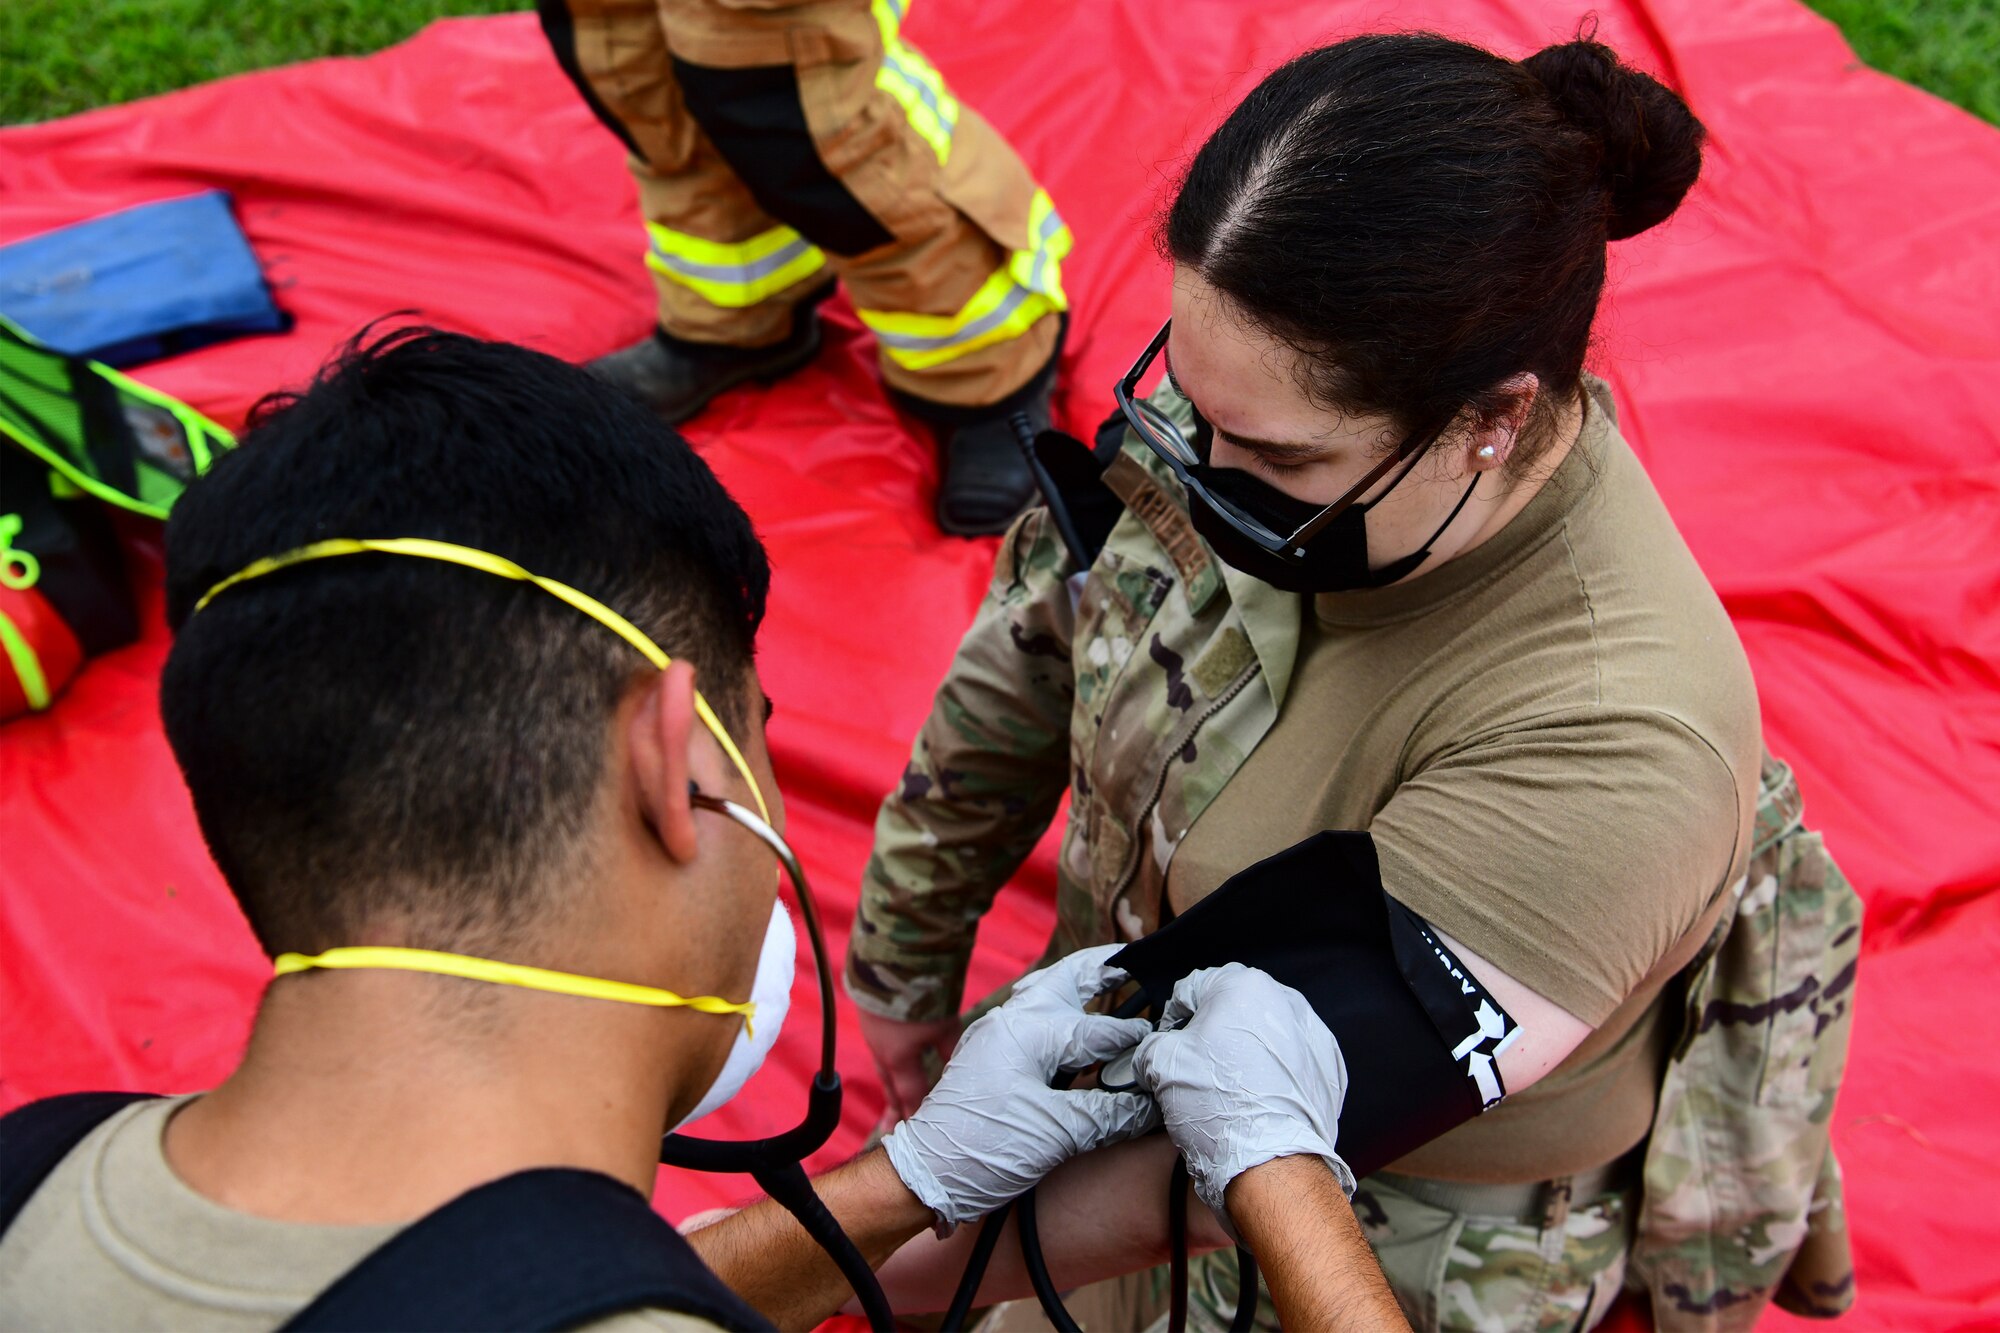 An Airman receives medical treatment.